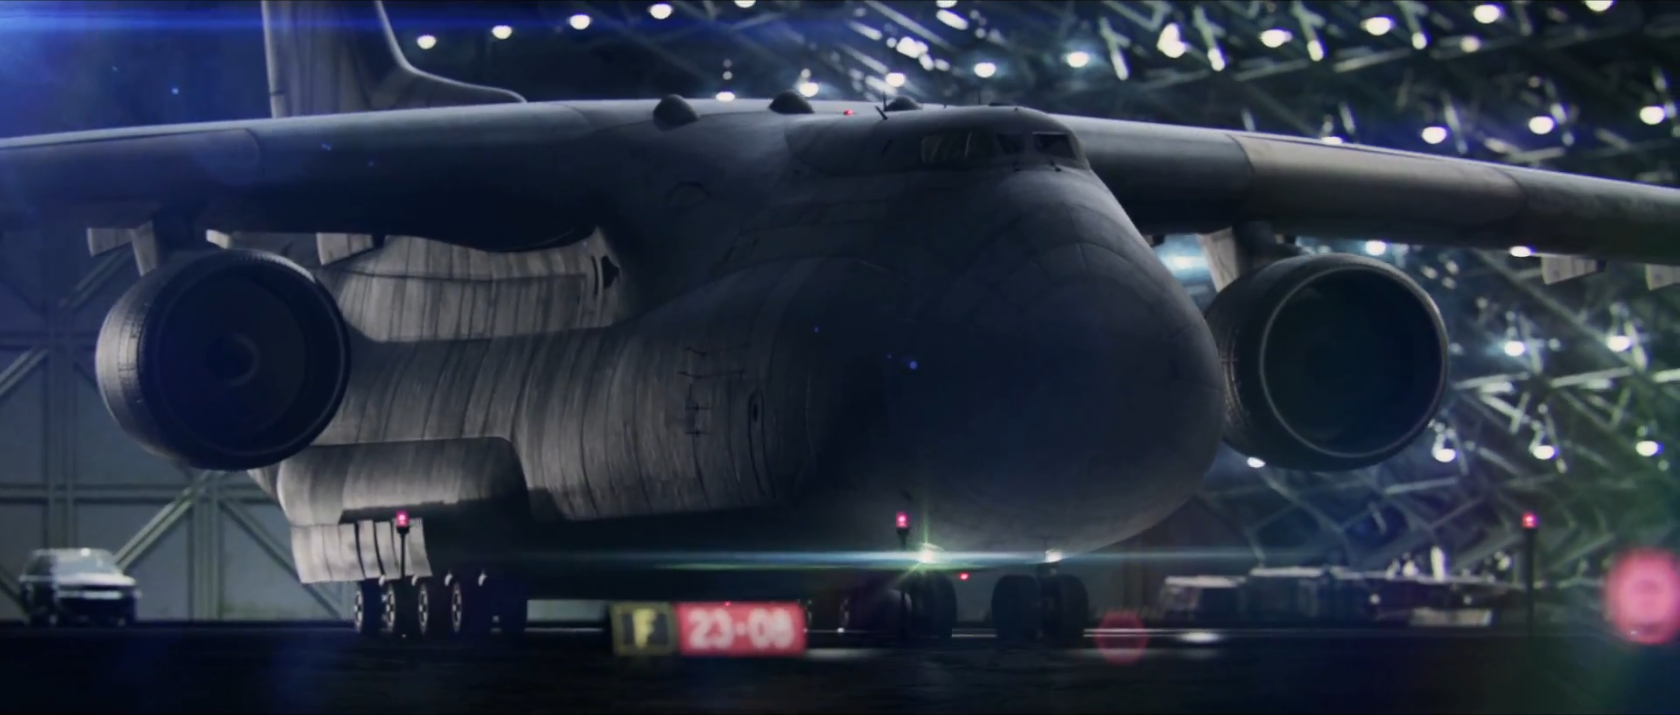 Tom Clancy's Splinter Cell: Blacklist -- Paladin Multi-Mission Aircraft  Edition